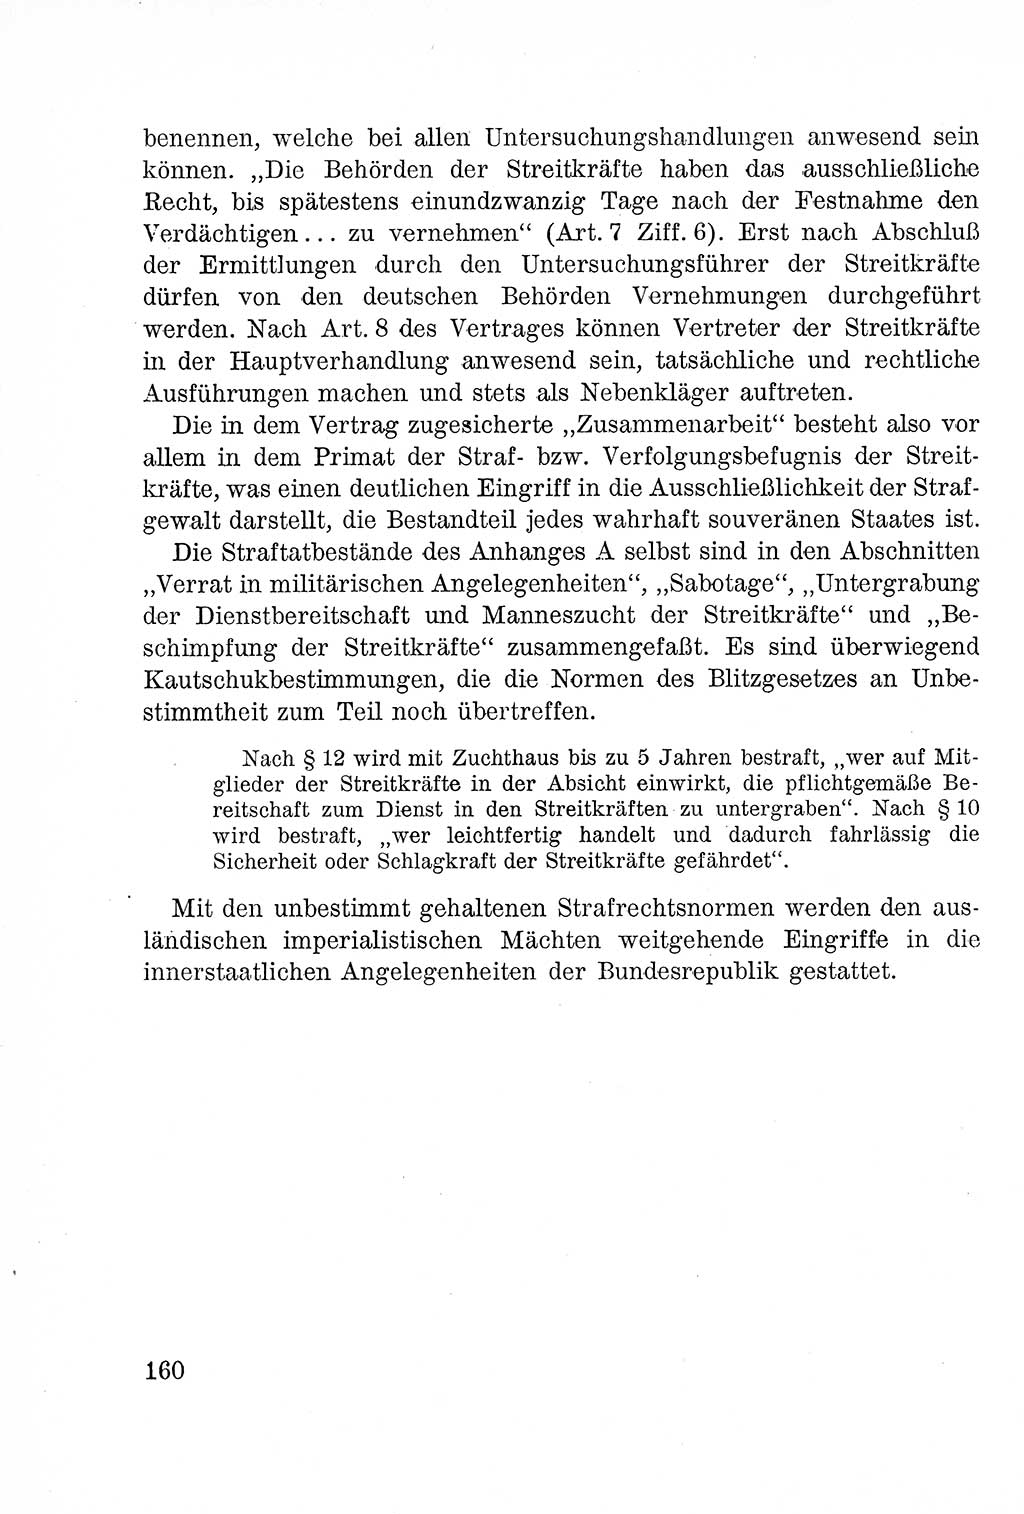 Lehrbuch des Strafrechts der Deutschen Demokratischen Republik (DDR), Allgemeiner Teil 1957, Seite 160 (Lb. Strafr. DDR AT 1957, S. 160)